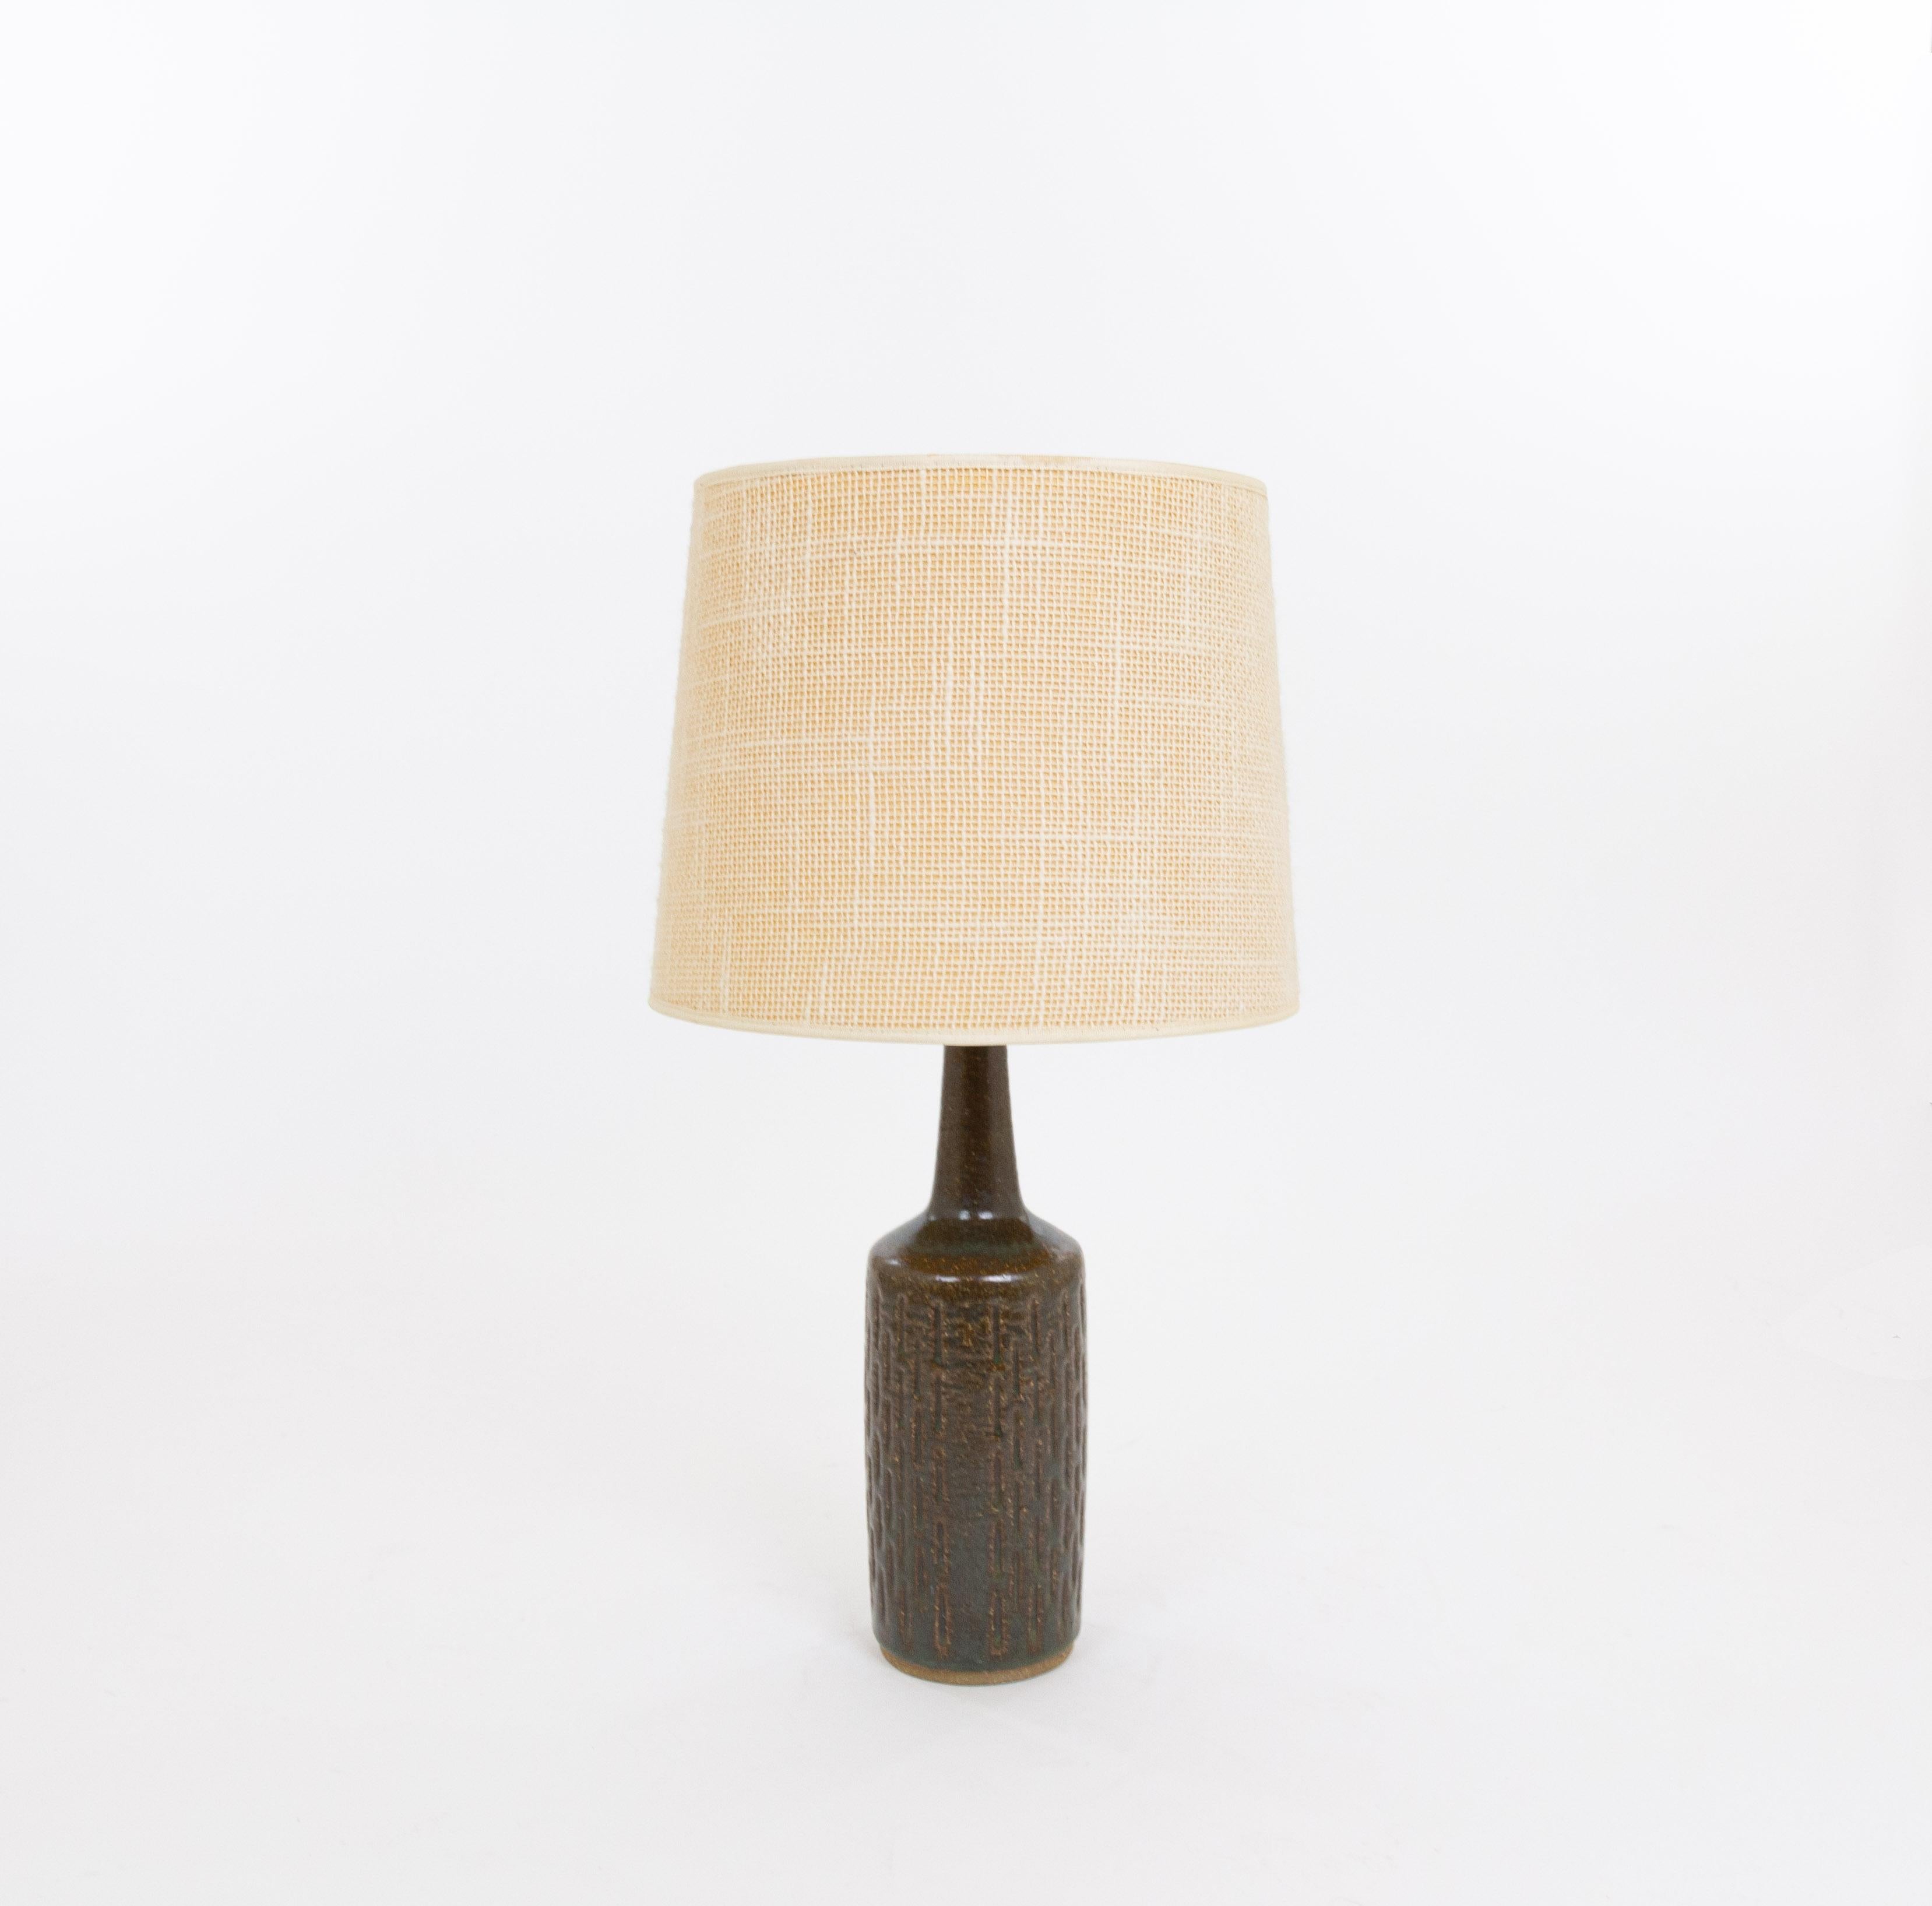 Lampe de table modèle DL/30 réalisée par Annelise et Per Linnemann-Schmidt pour Palshus dans les années 1960. La couleur de la base décorée à la main est un mélange de brun et de vert. Il présente des motifs impressionnés.

La lampe est livrée avec